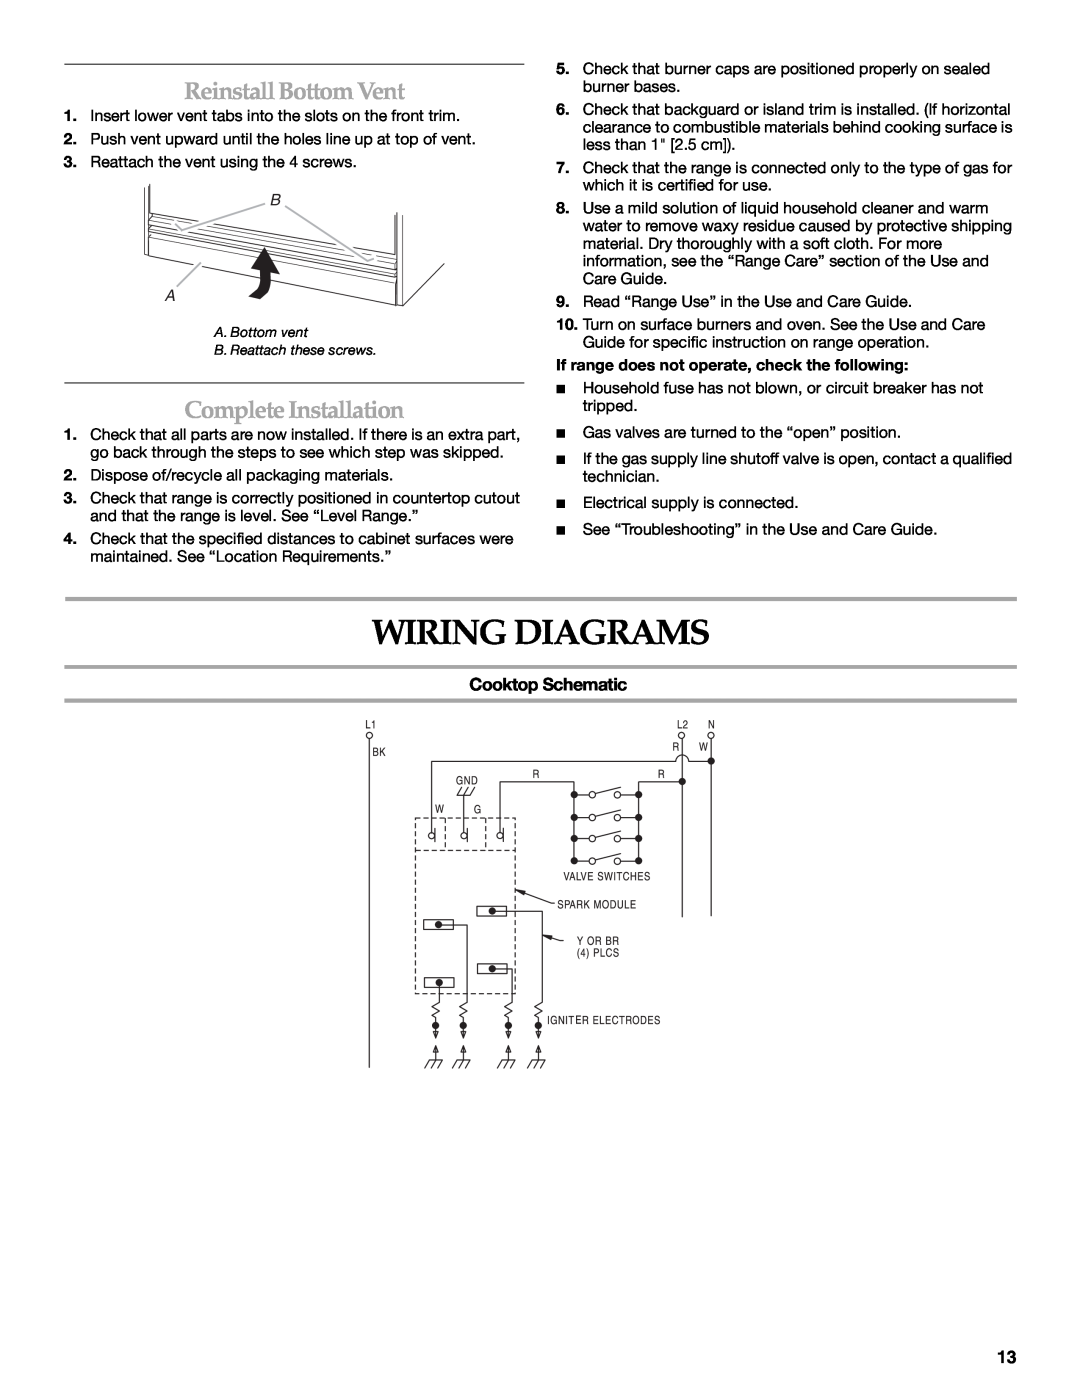 KitchenAid 9759121A Wiring Diagrams, ReinstallBottom Vent, Complete Installation, Cooktop Schematic 